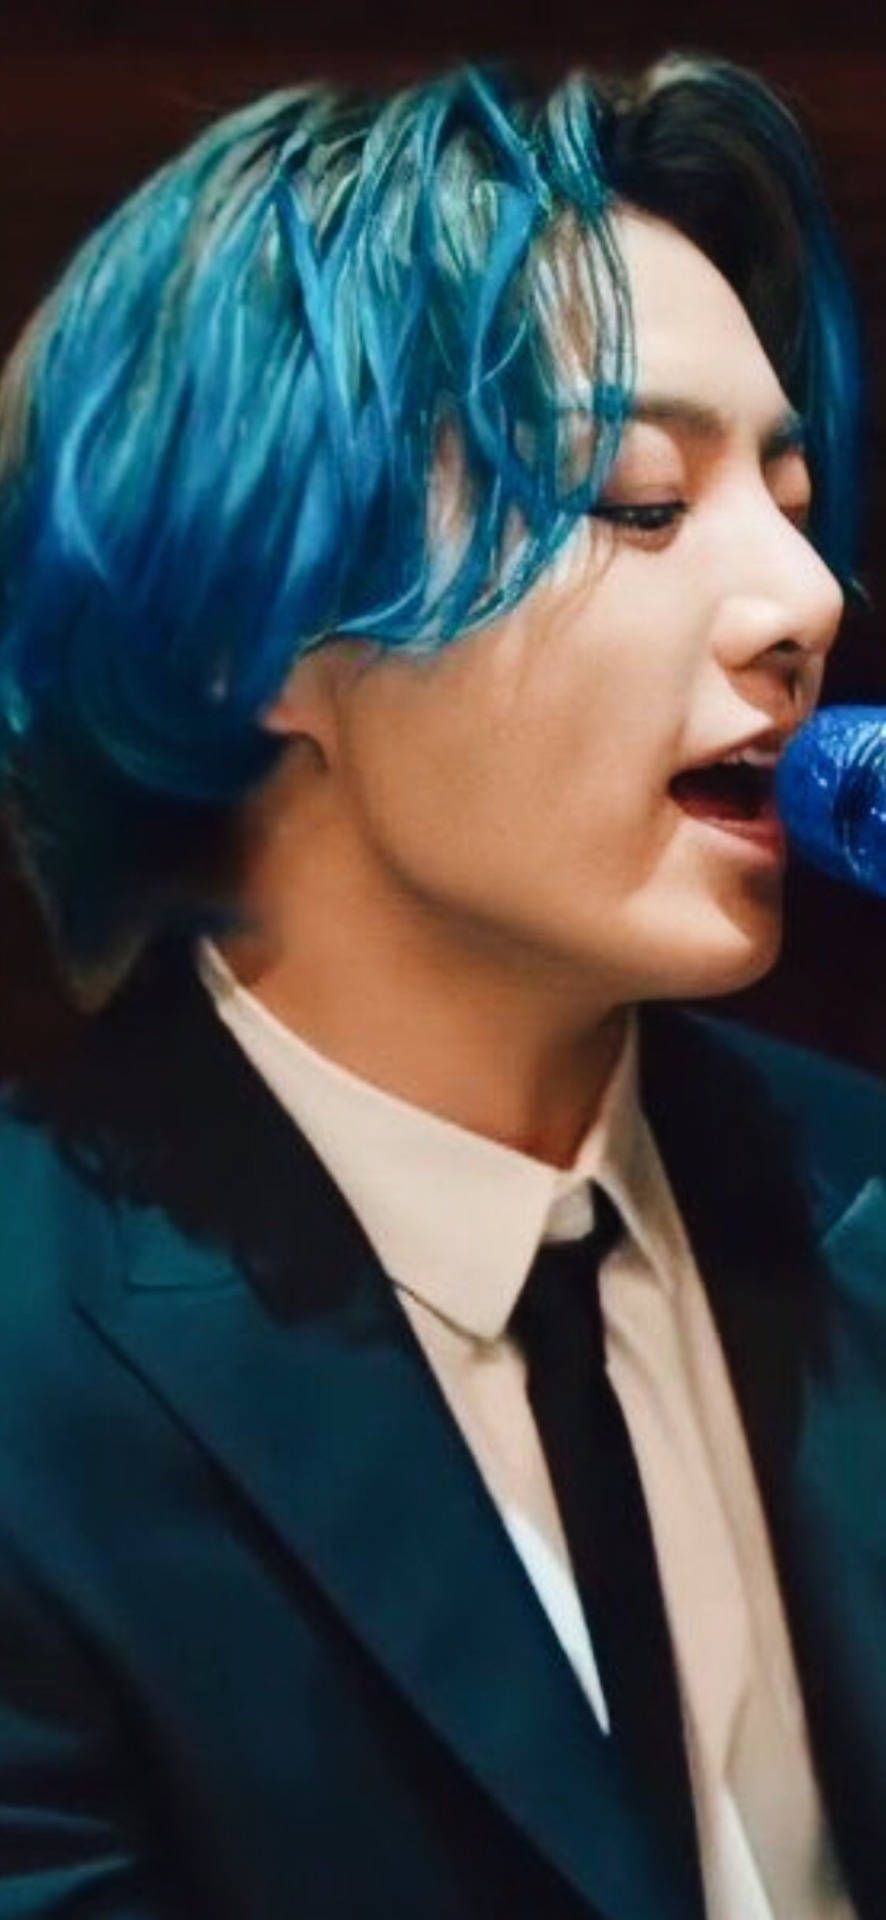 Jung Kook Blue Hair Wallpaper